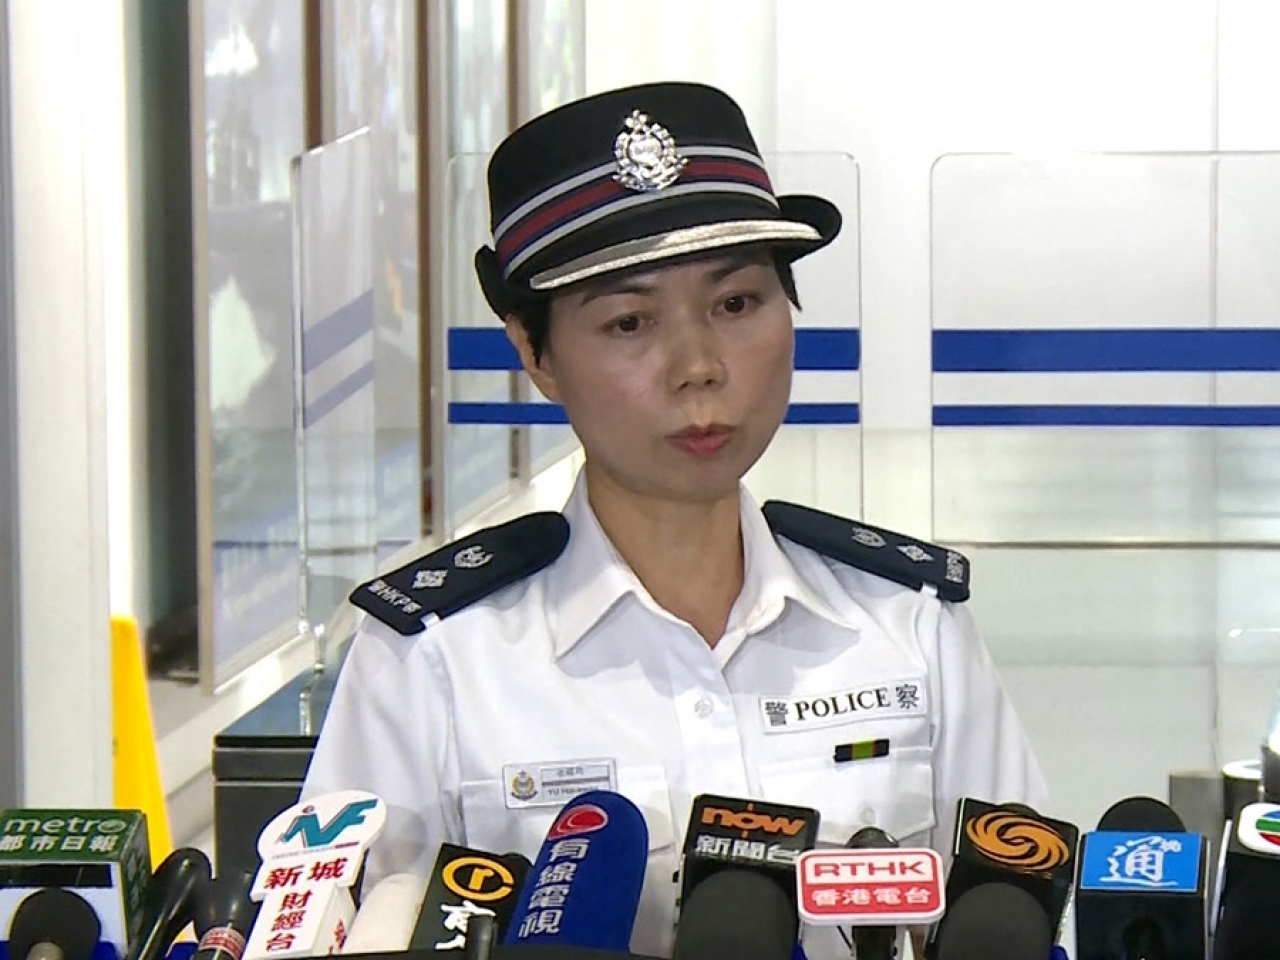 拘捕20人!香港警察谴责暴力示威者:胡作非为目无法纪